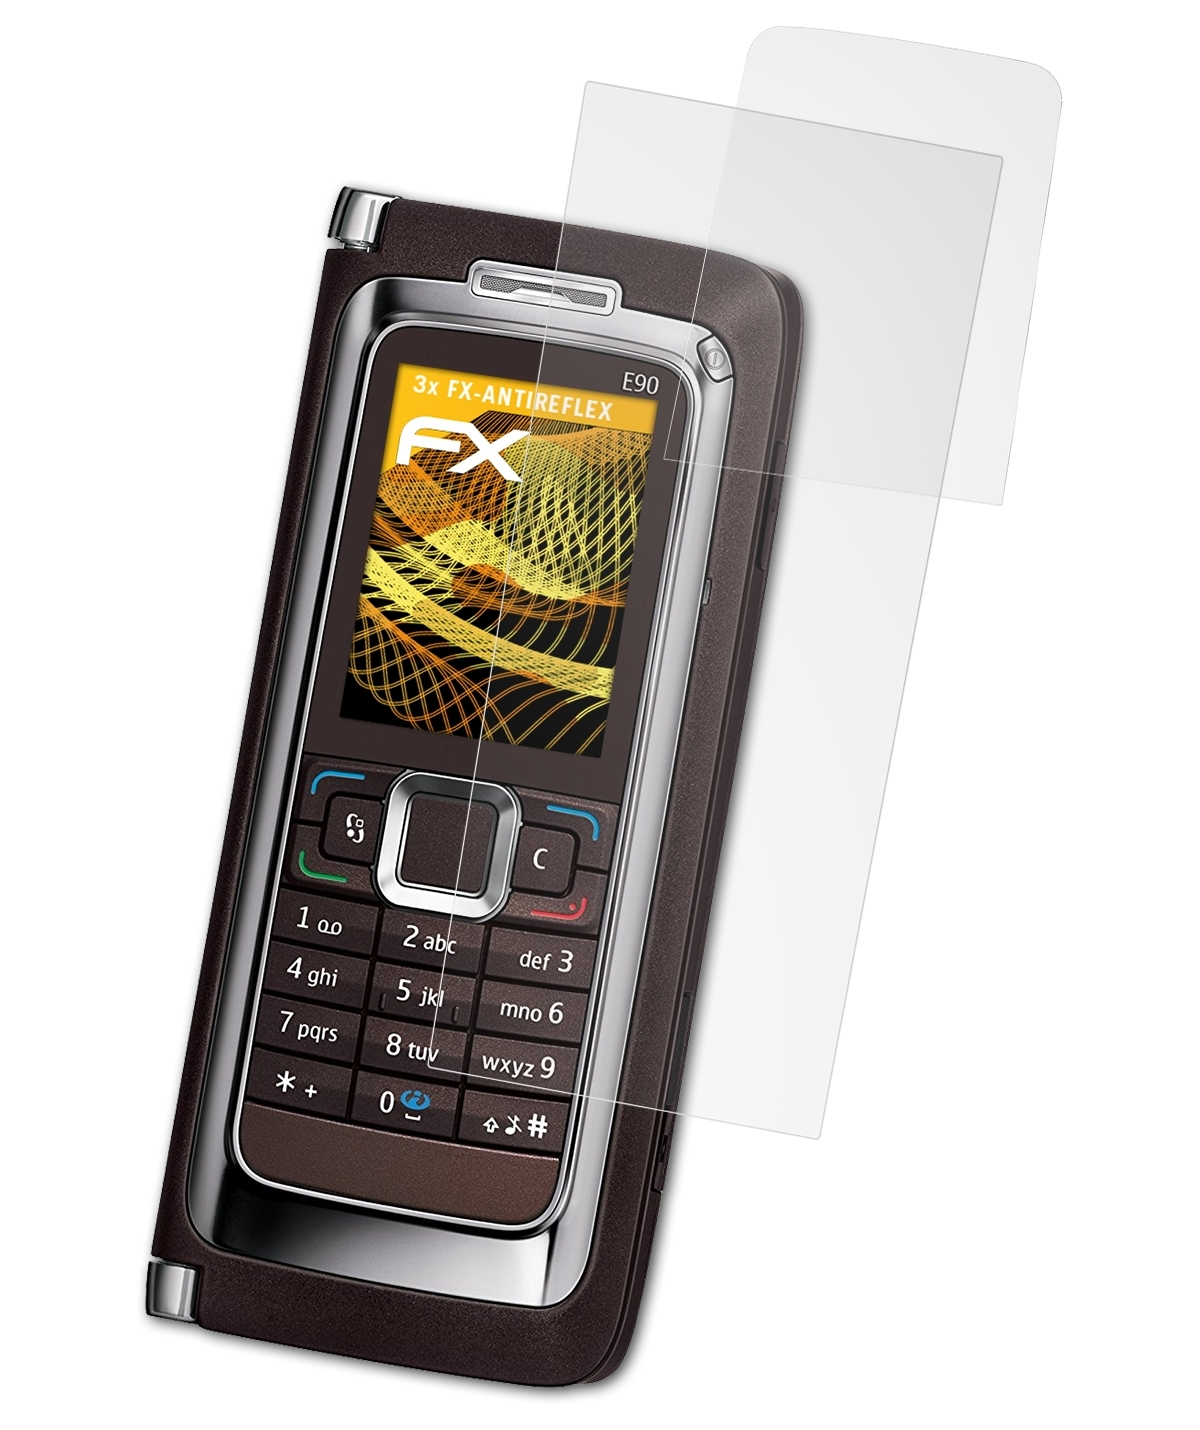 3x Communicator) E90 Nokia FX-Antireflex Displayschutz(für ATFOLIX